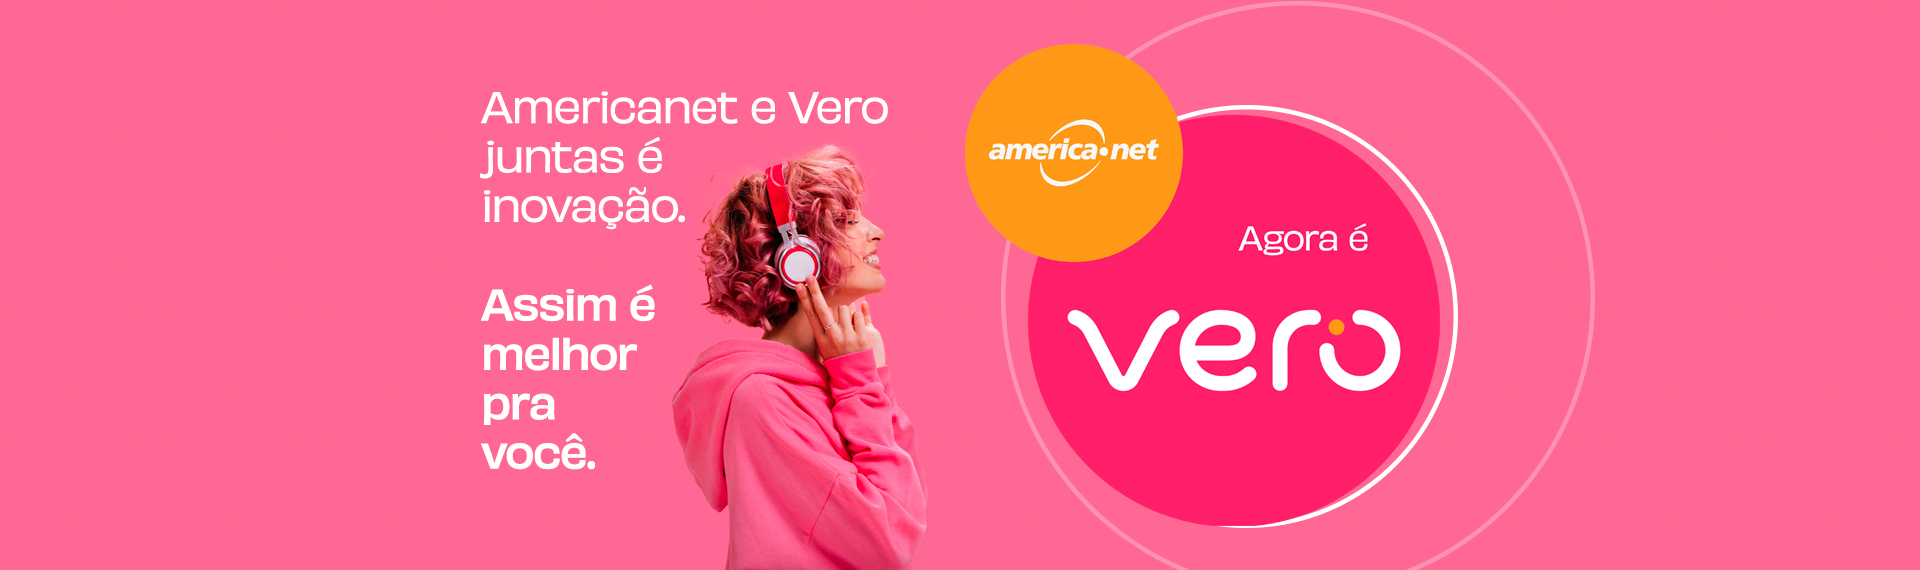 Americanet + Vero